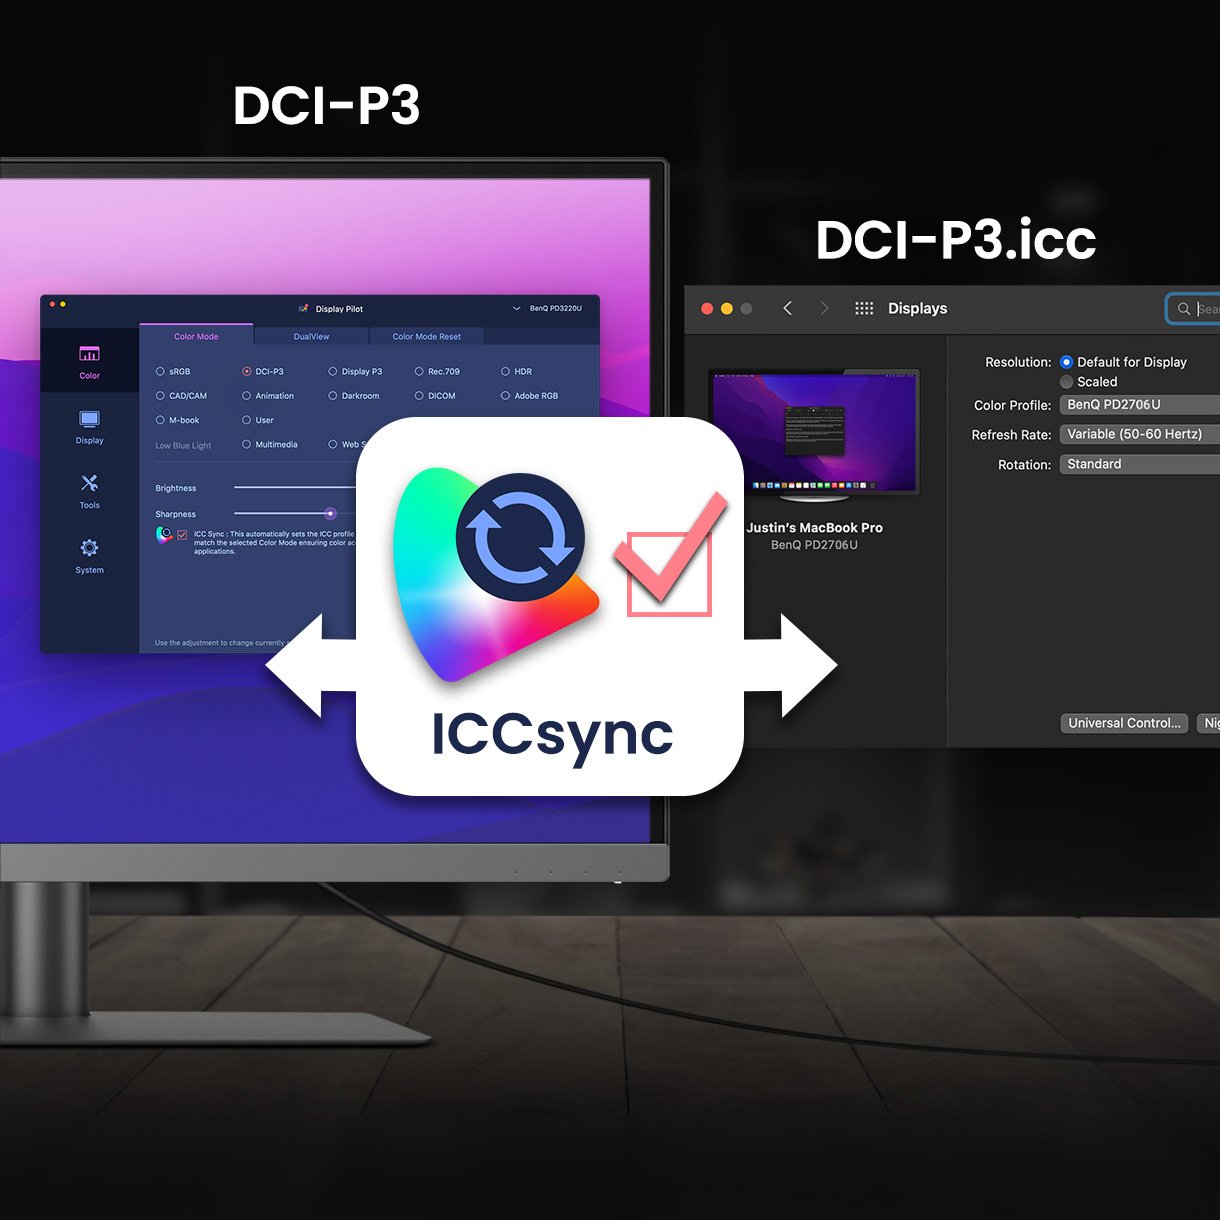 Функція BenQ ICCsync автоматично зіставляє та синхронізує профілі ICC на моніторі, коли ви змінюєте колірні режими, а також між екраном ноутбука та монітором BenQ. Усе це робиться миттєво.